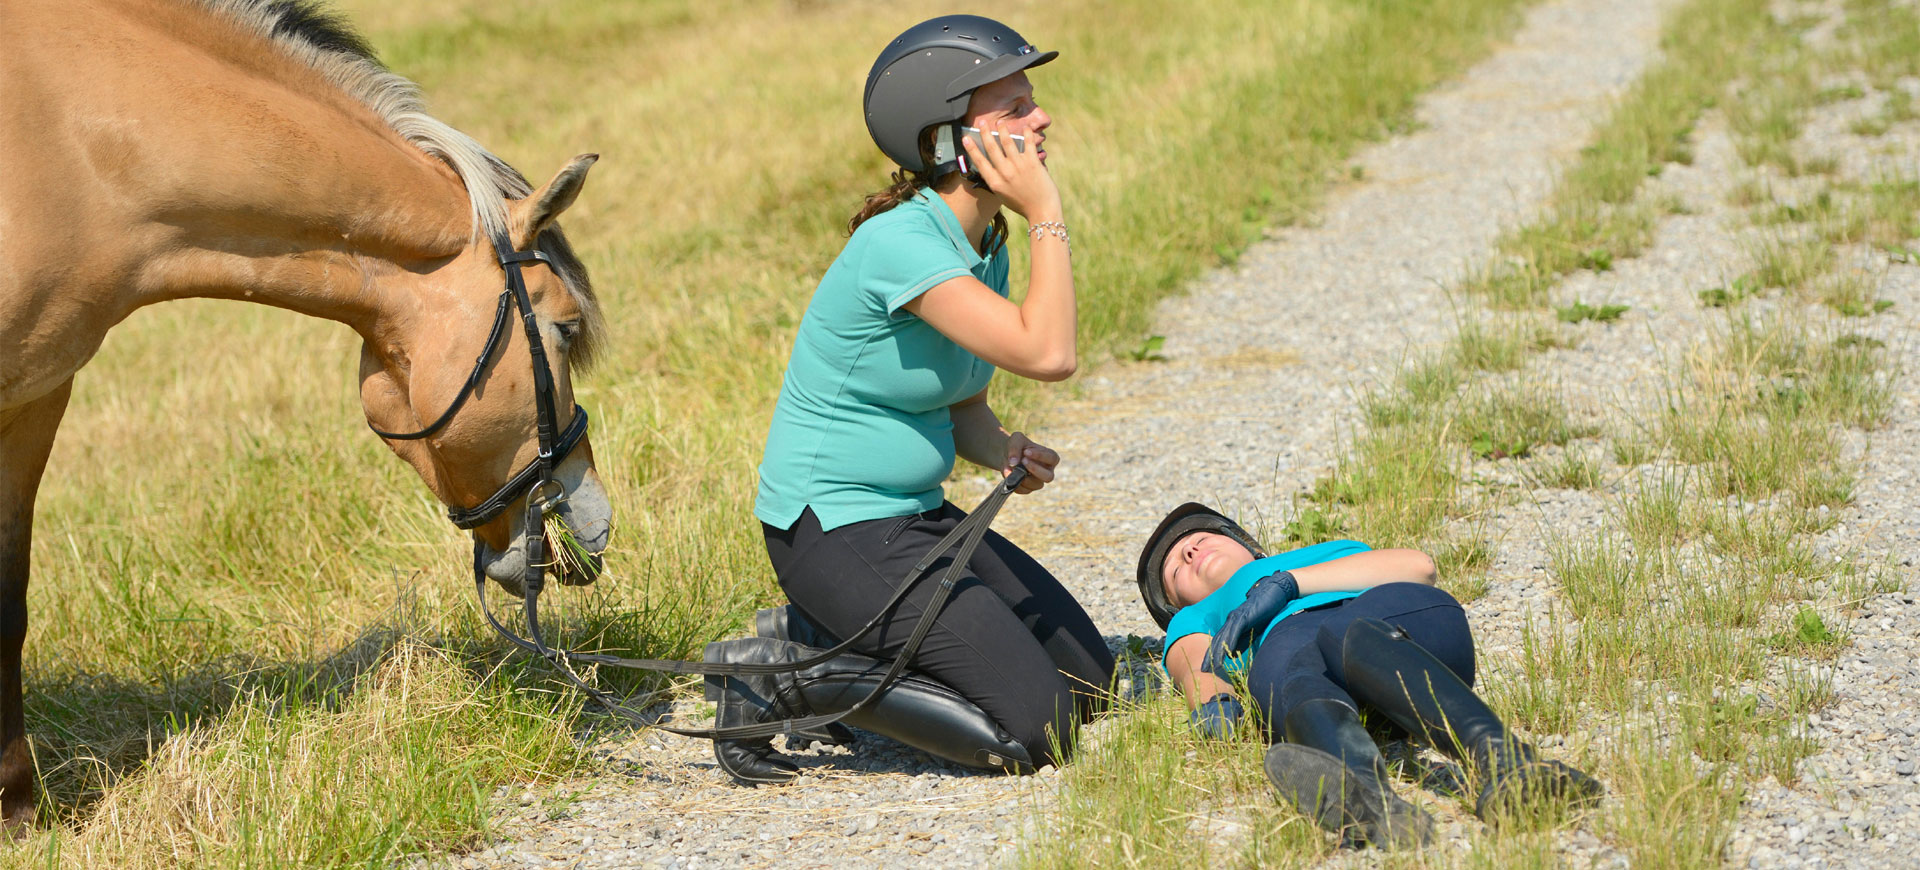 Foto eines Reitunfalls im Gelände. Neben einer bewusstlosen Reiterin kniet eine weitere Reiterin und ruft mit dem Smartphone den Rettungsdienst.